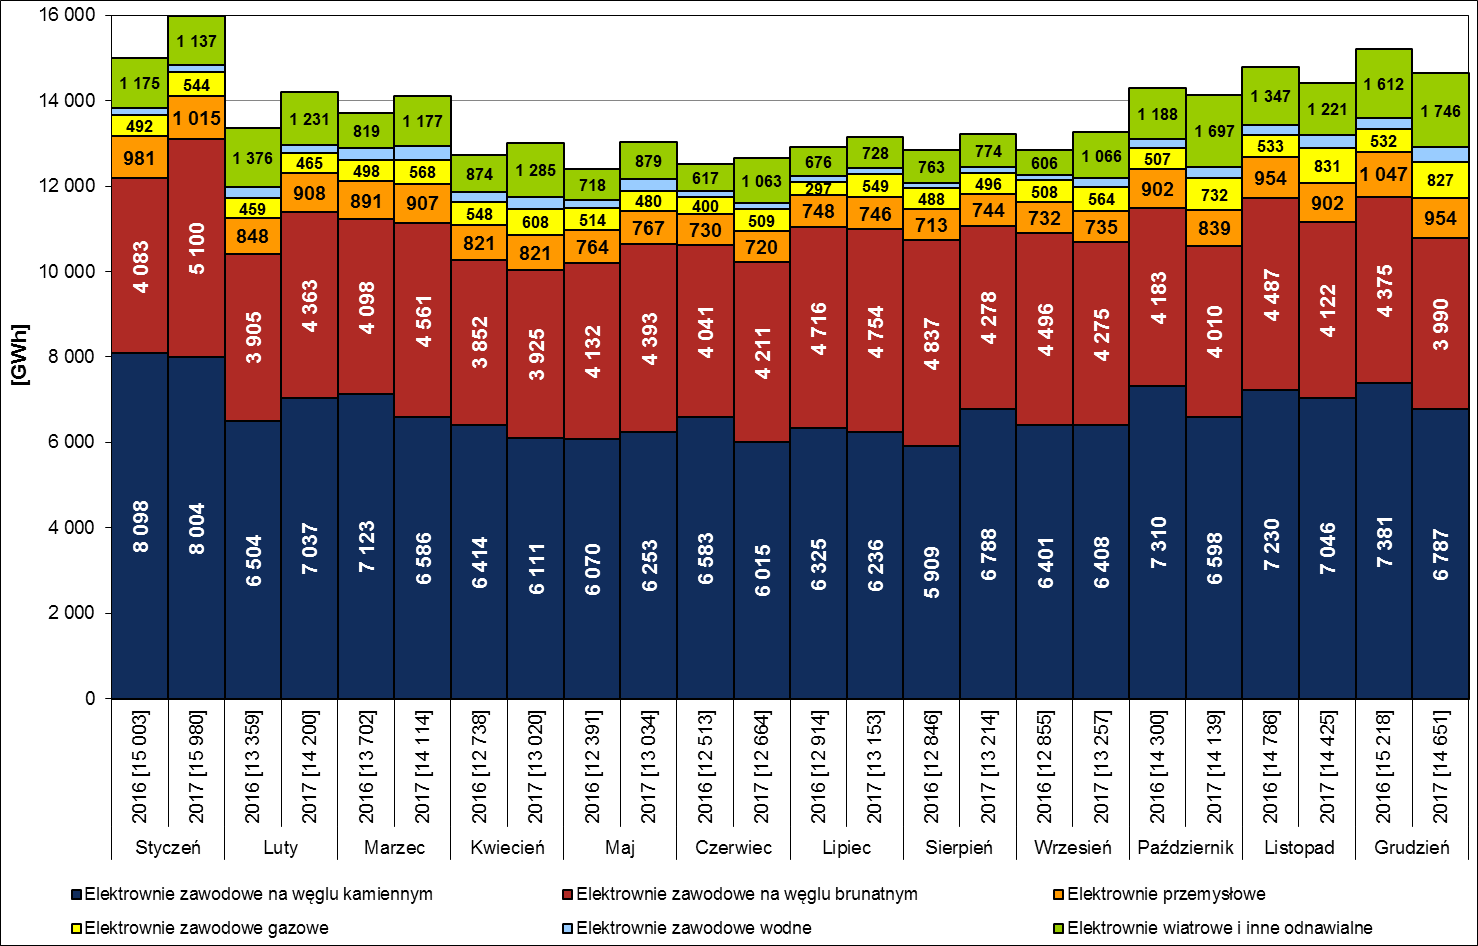 Производство электроэнергии на отечественных электростанциях в отдельные месяцы 2016 и 2017 гг